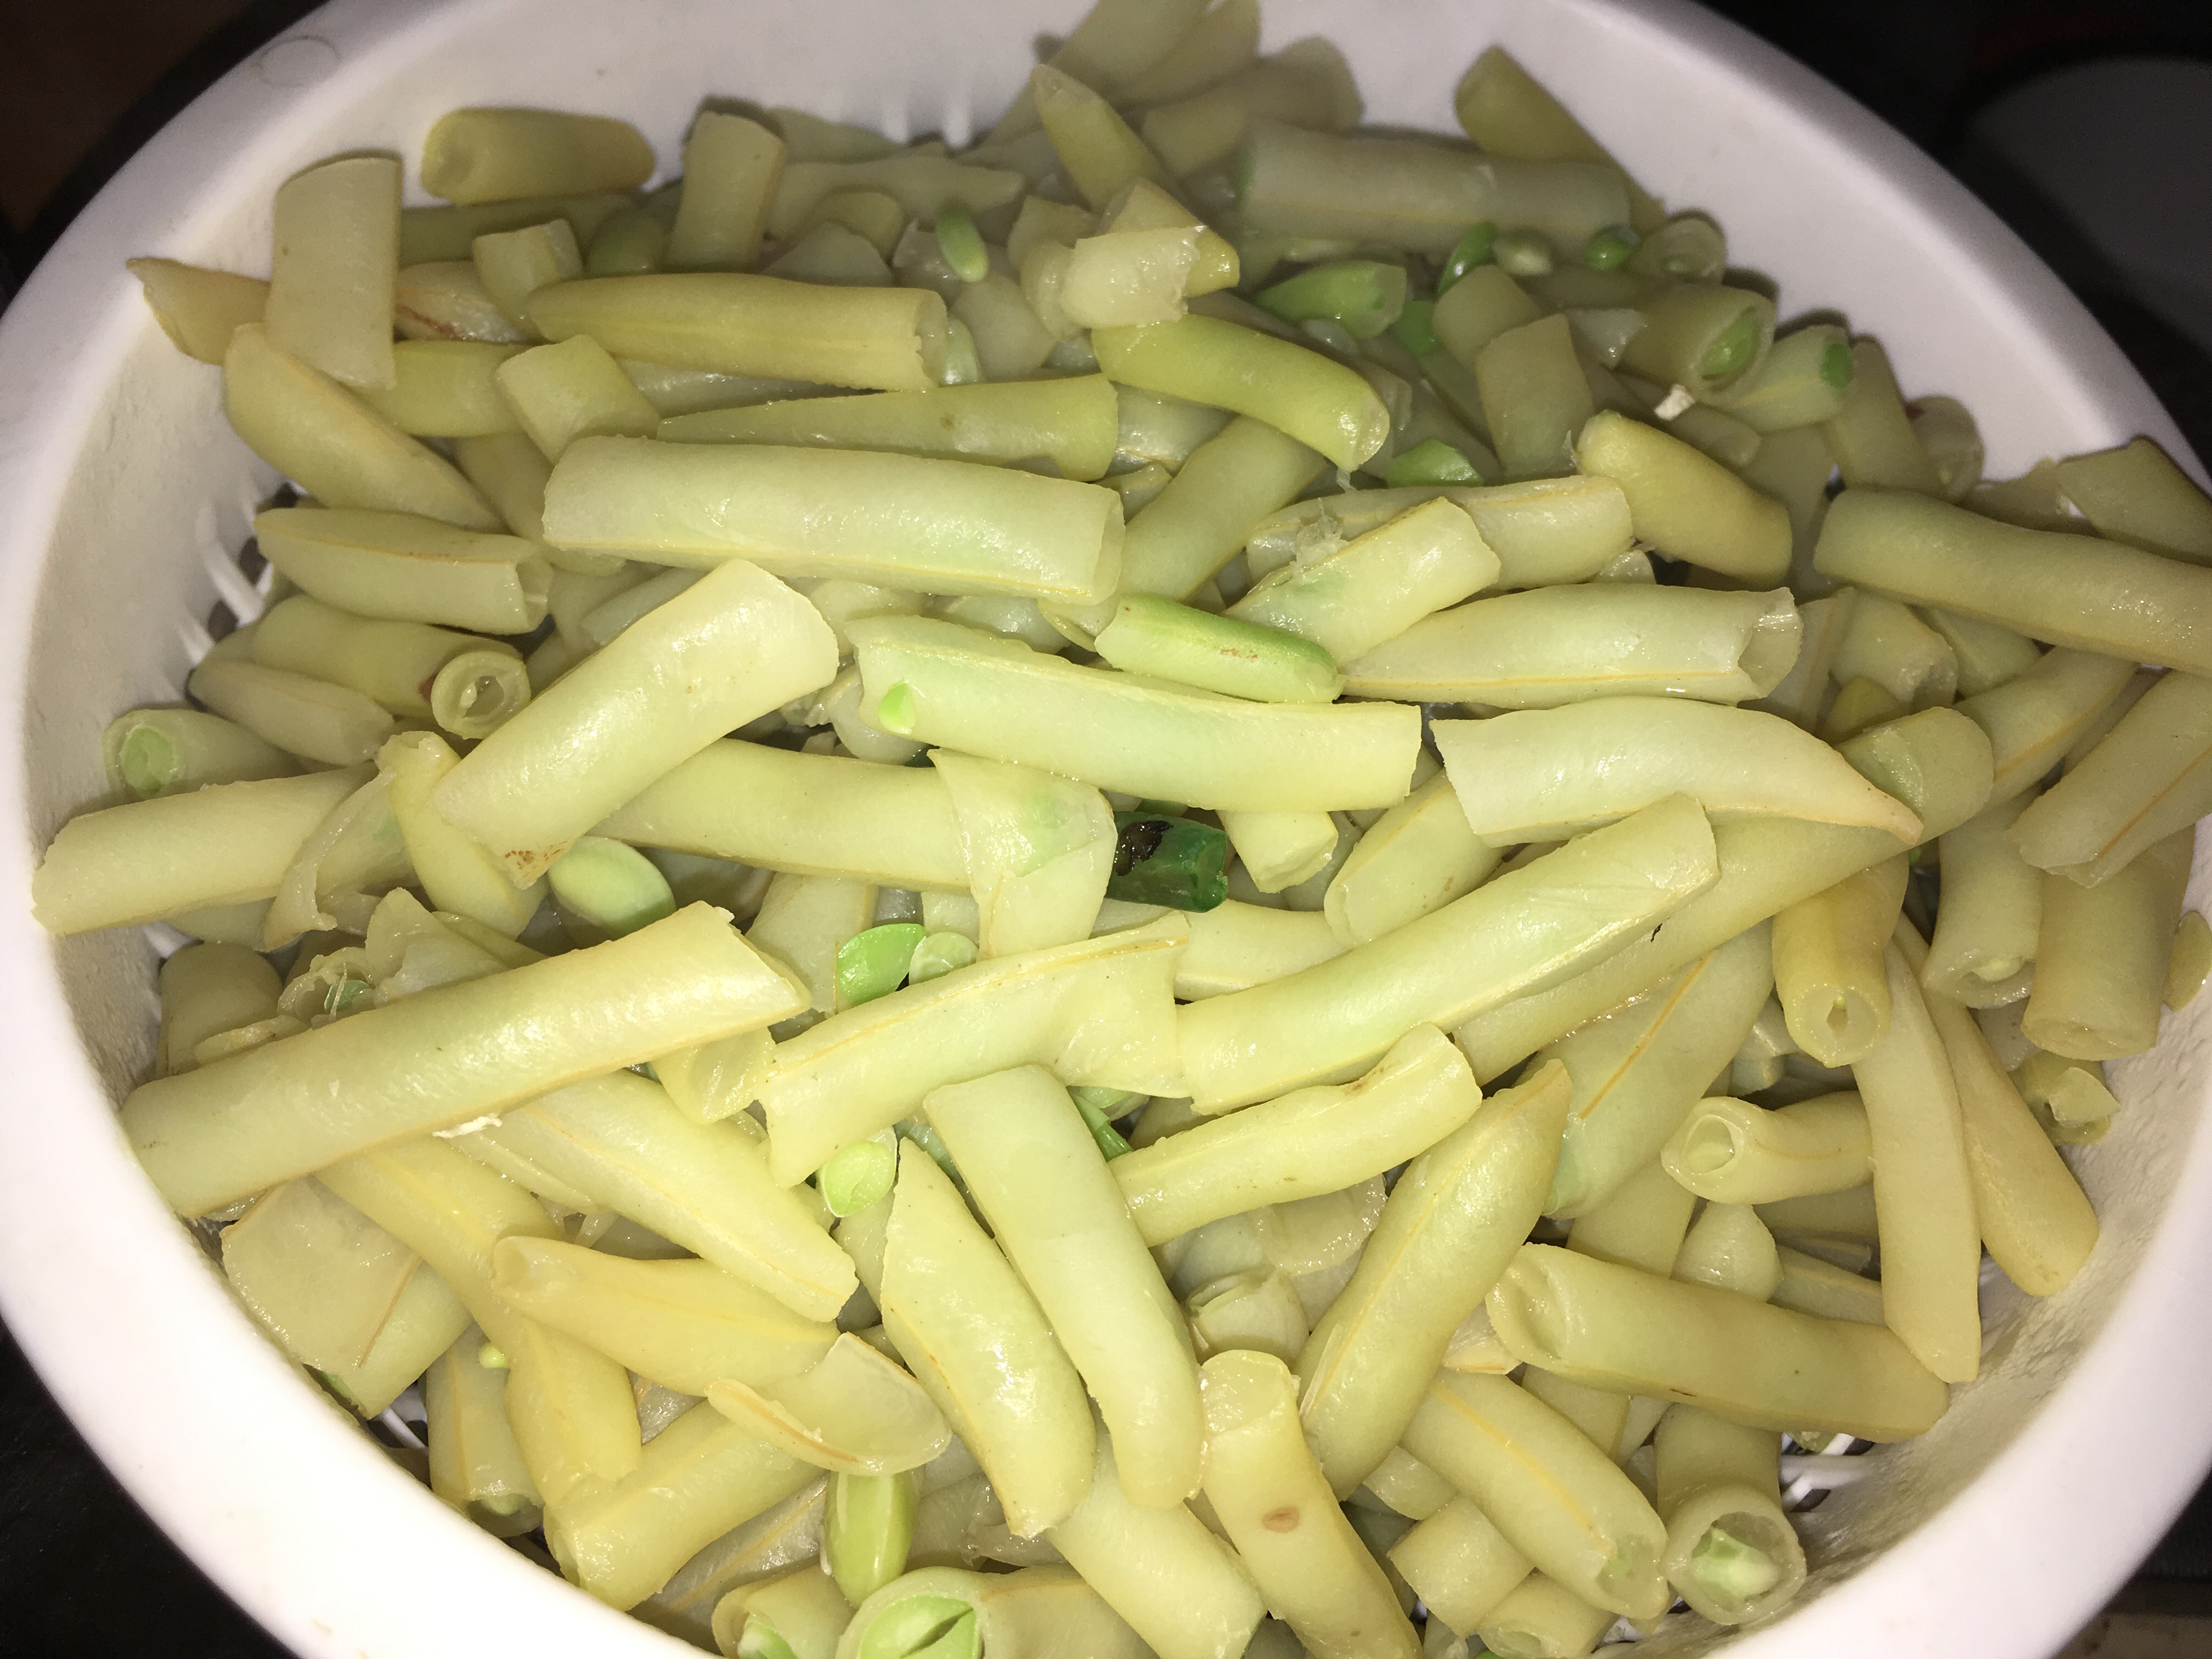 Salata de fasole verde cu piept de pui